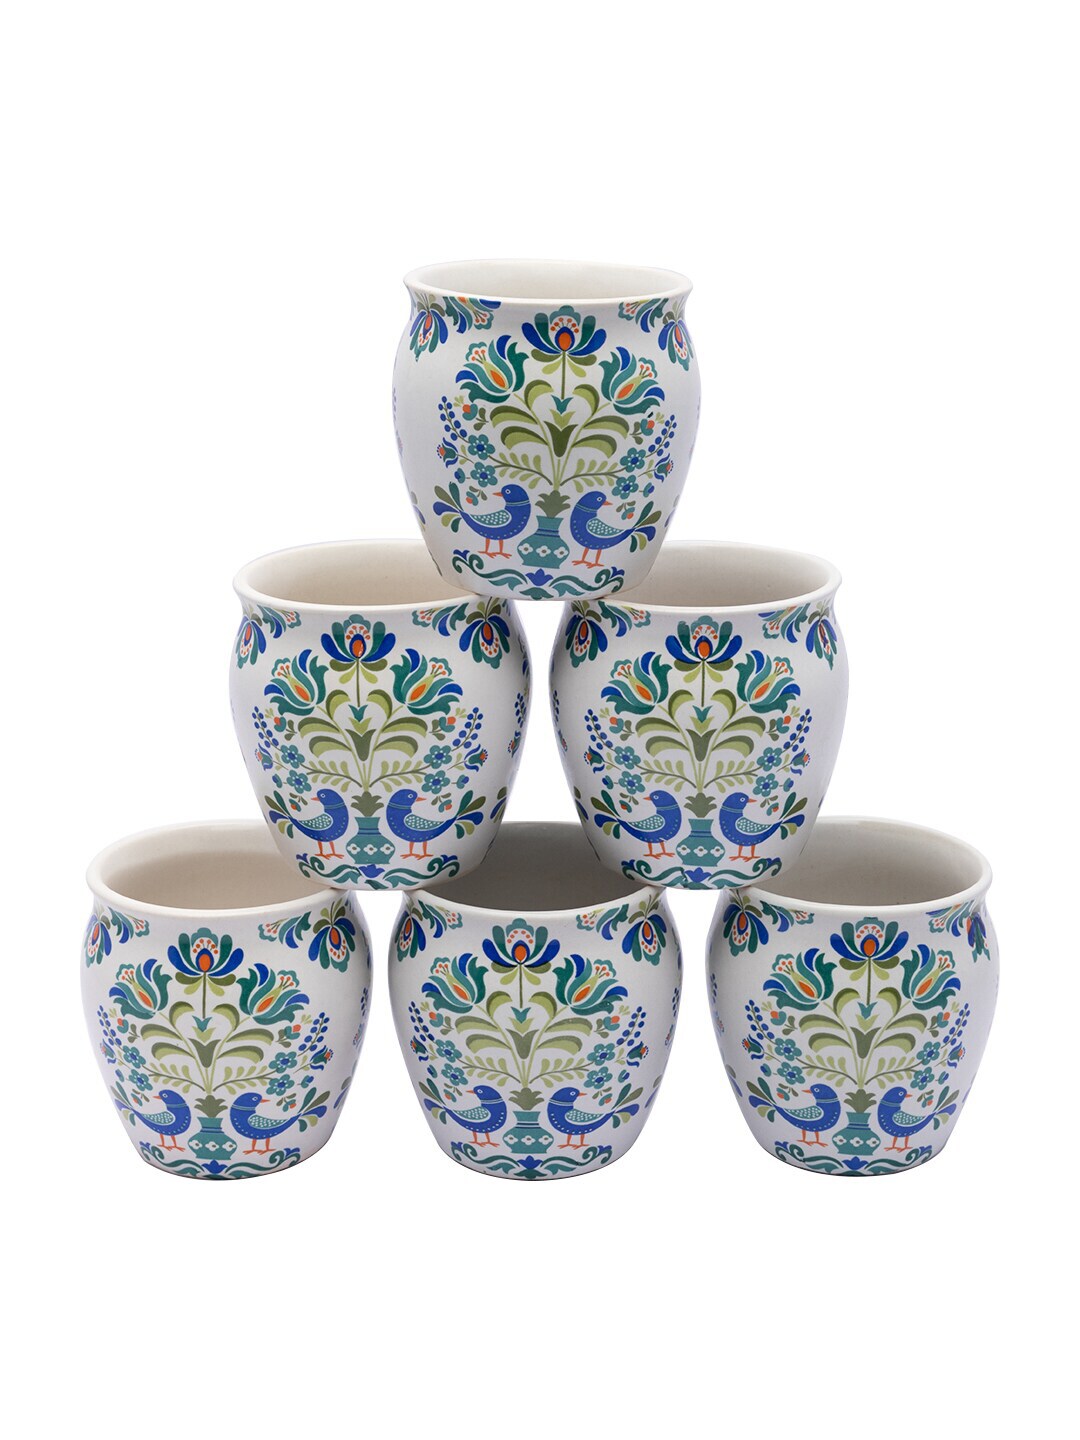 MARKET99 Blue & White Printed Ceramic Matte Kulladhs Set of 6 Price in India